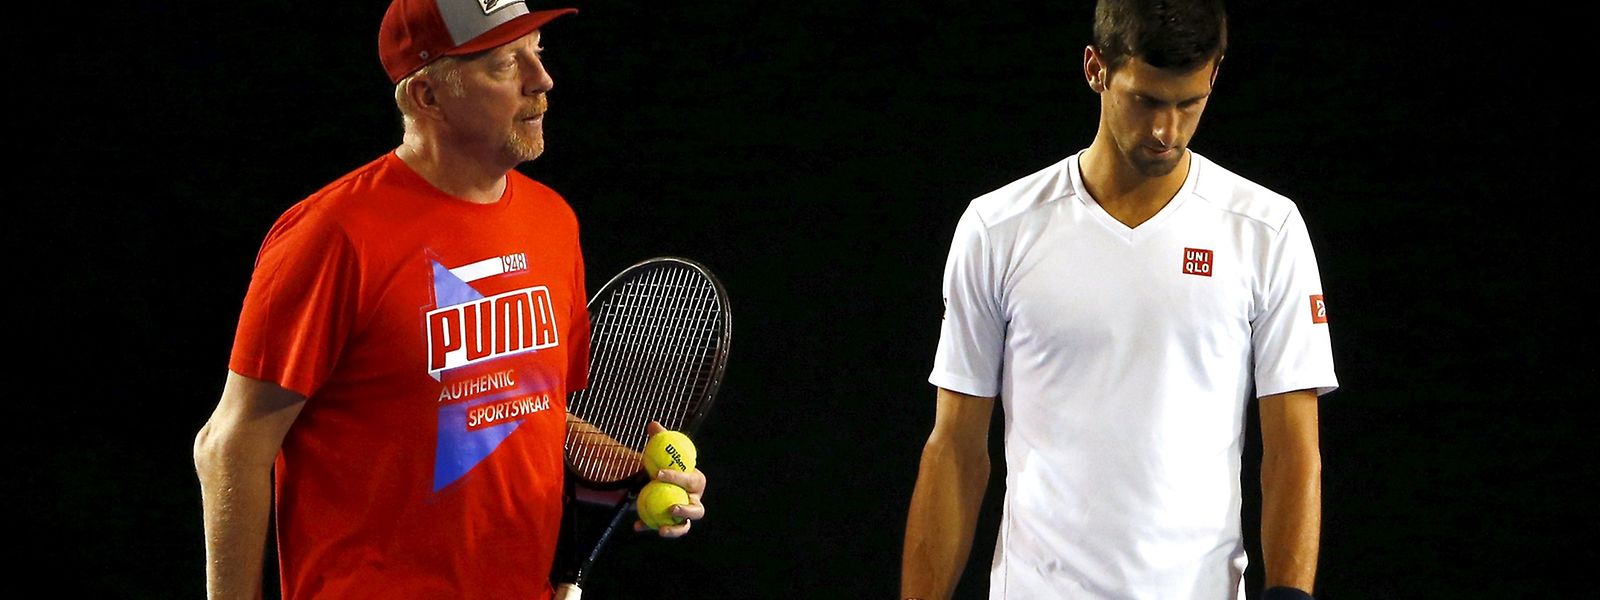 Boris Becker (l.) über seinen Schützling Novak Djokovic: "Er will immer lernen, Tag für Tag. So sind Champions."